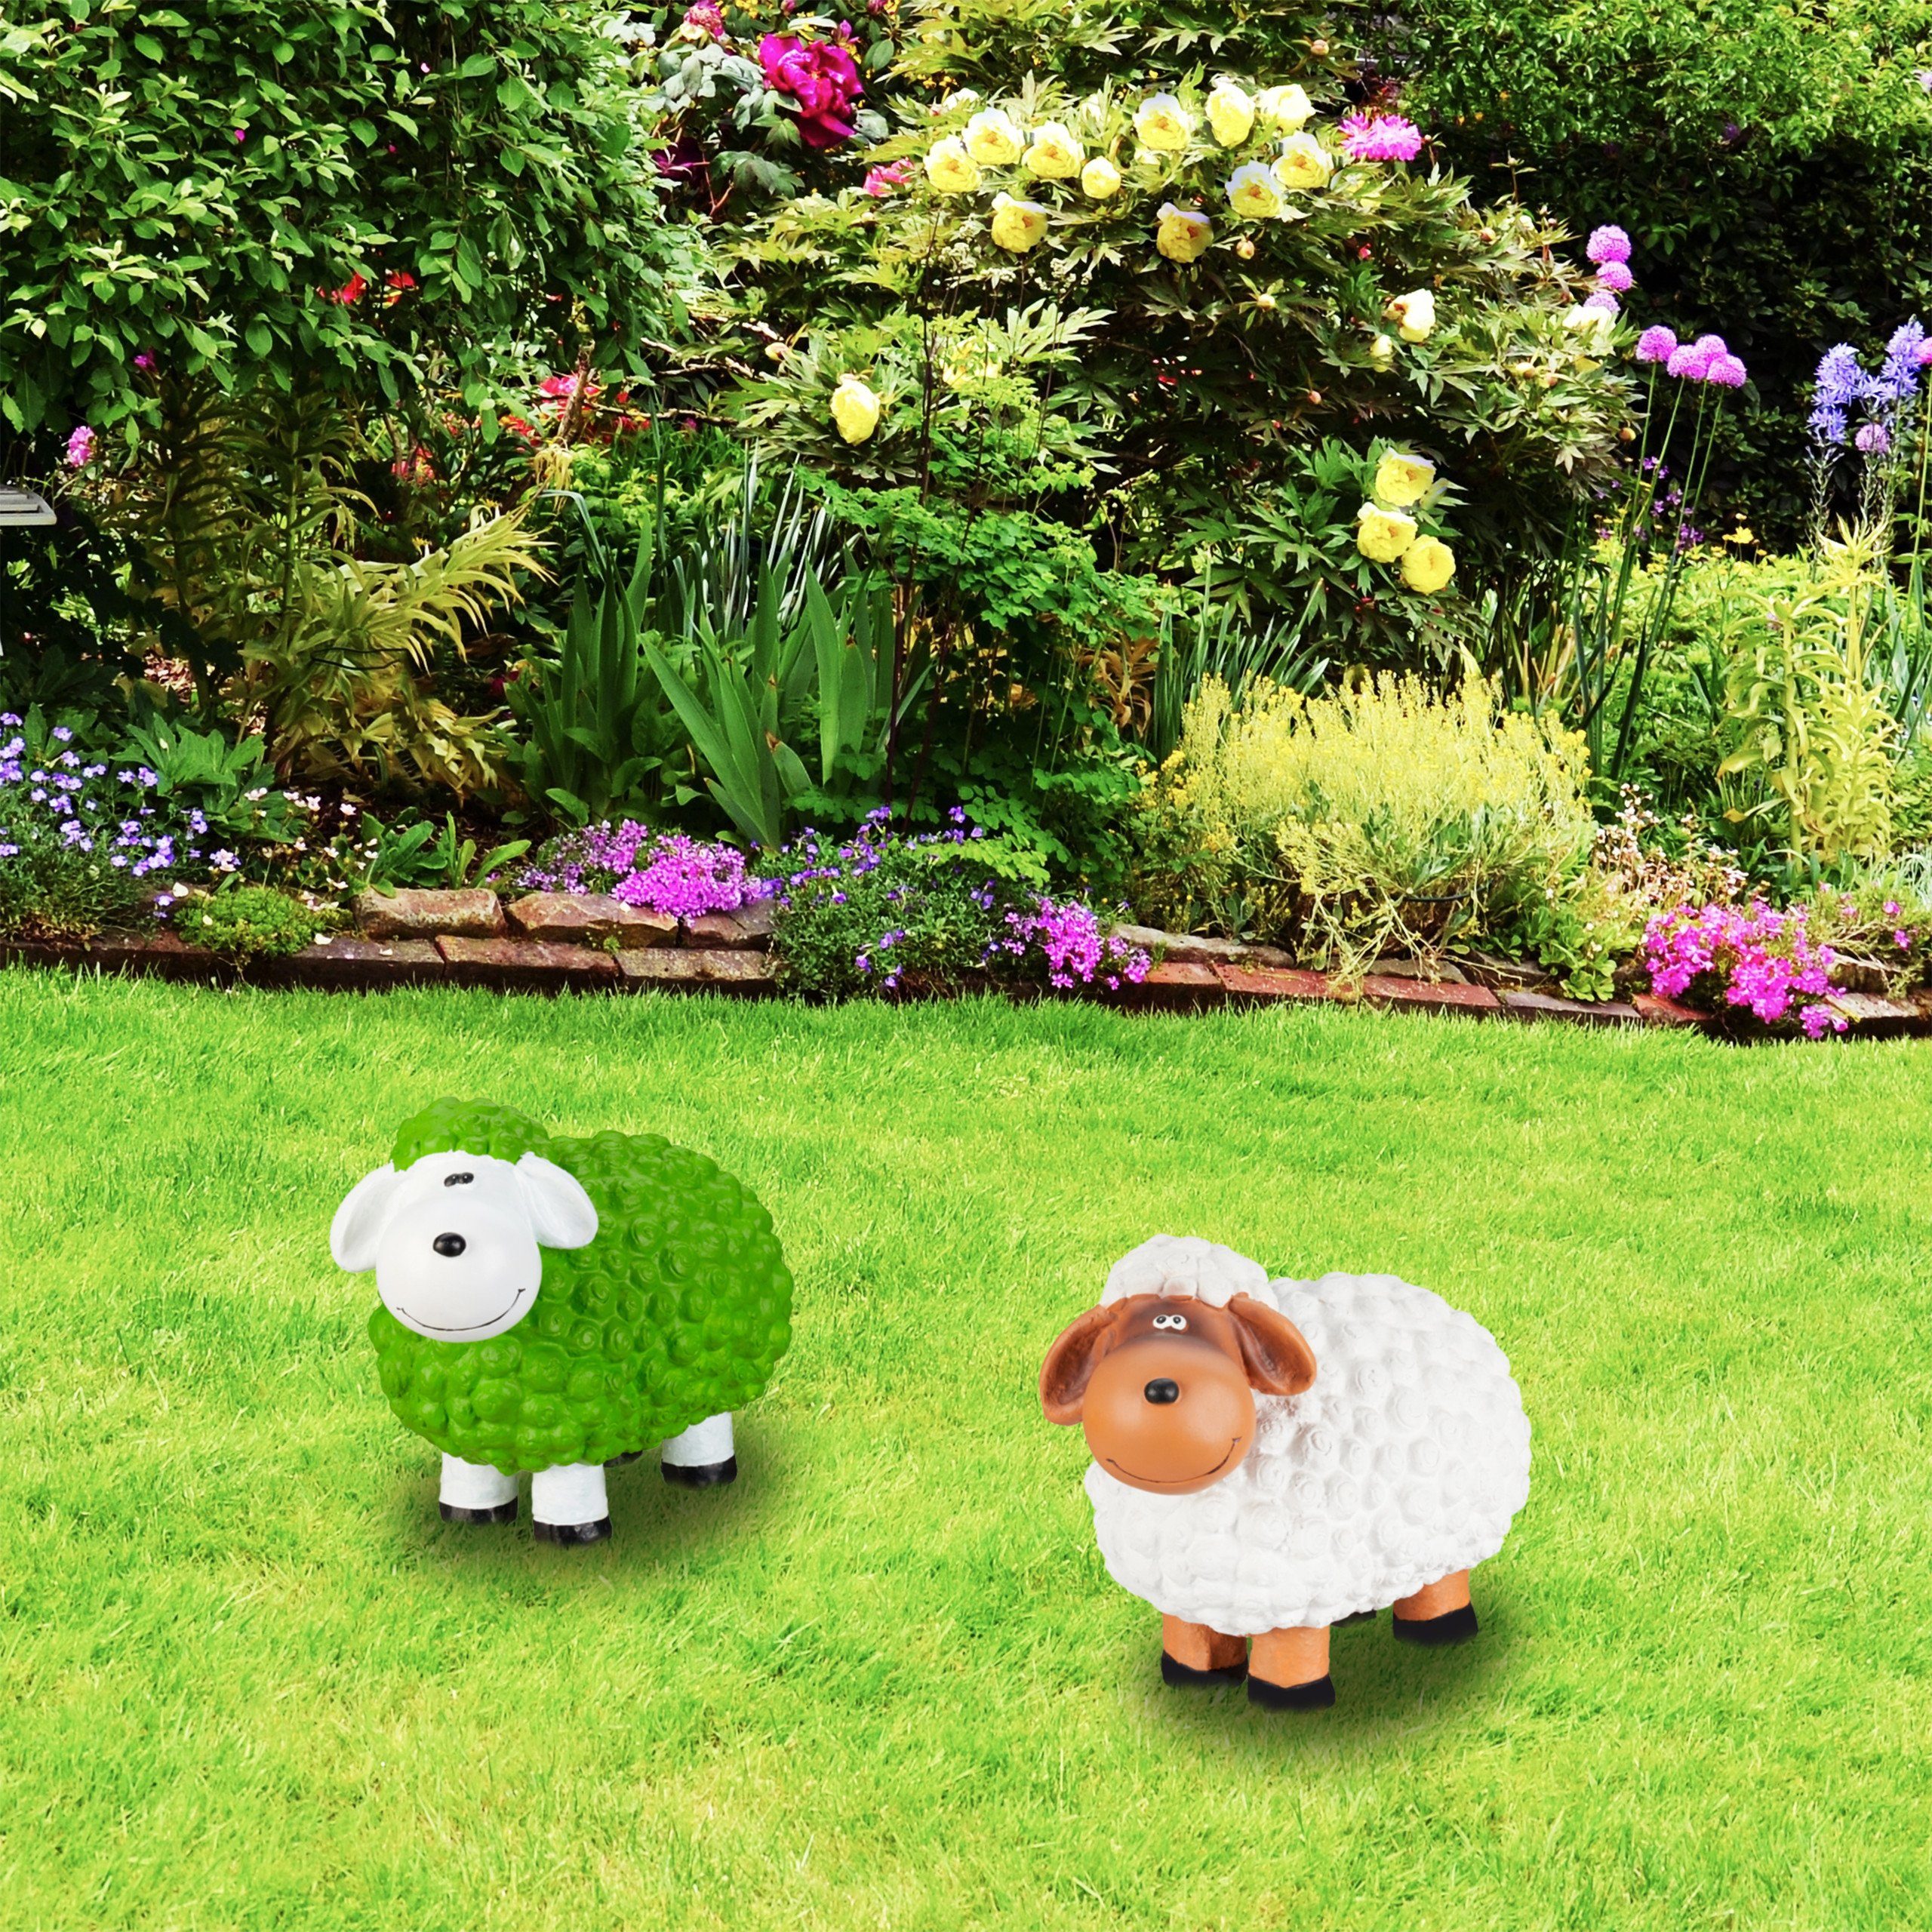 relaxdays Gartenfigur Gartenfigur Schaf, Grün Weiß Grün Schwarz